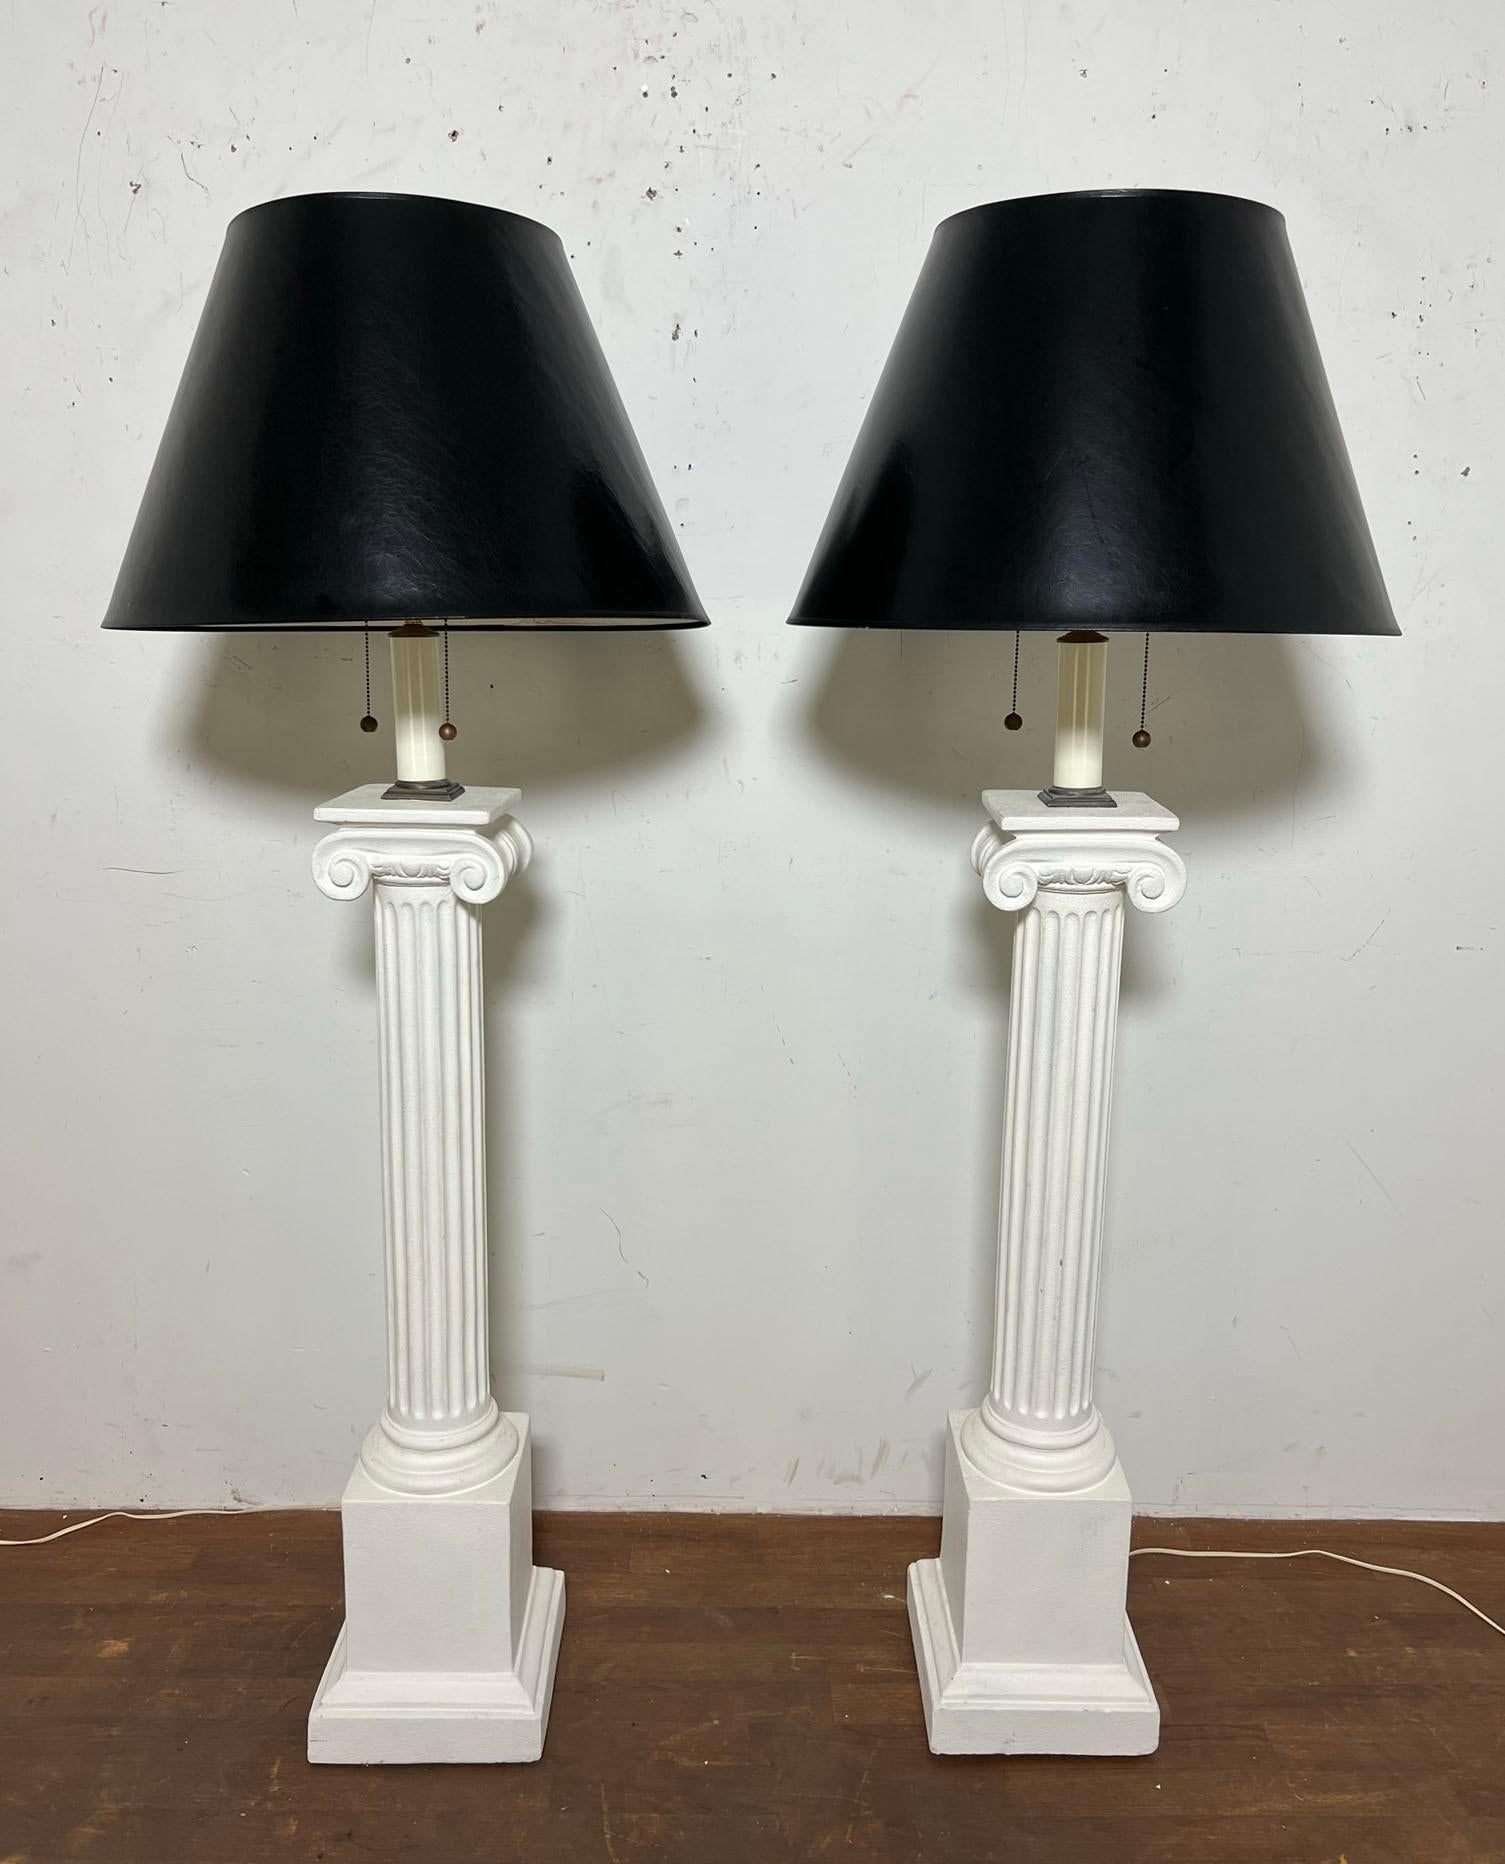 Une paire de lampadaires sculpturaux en plâtre par Bob Graham vers les années 1980. Ils sont de hauteur réglable, avec les abat-jour originaux en laque noire.

Hauteur de 64,5 pouces, tel qu'illustré, jusqu'au sommet de l'abat-jour. Bases 10.25